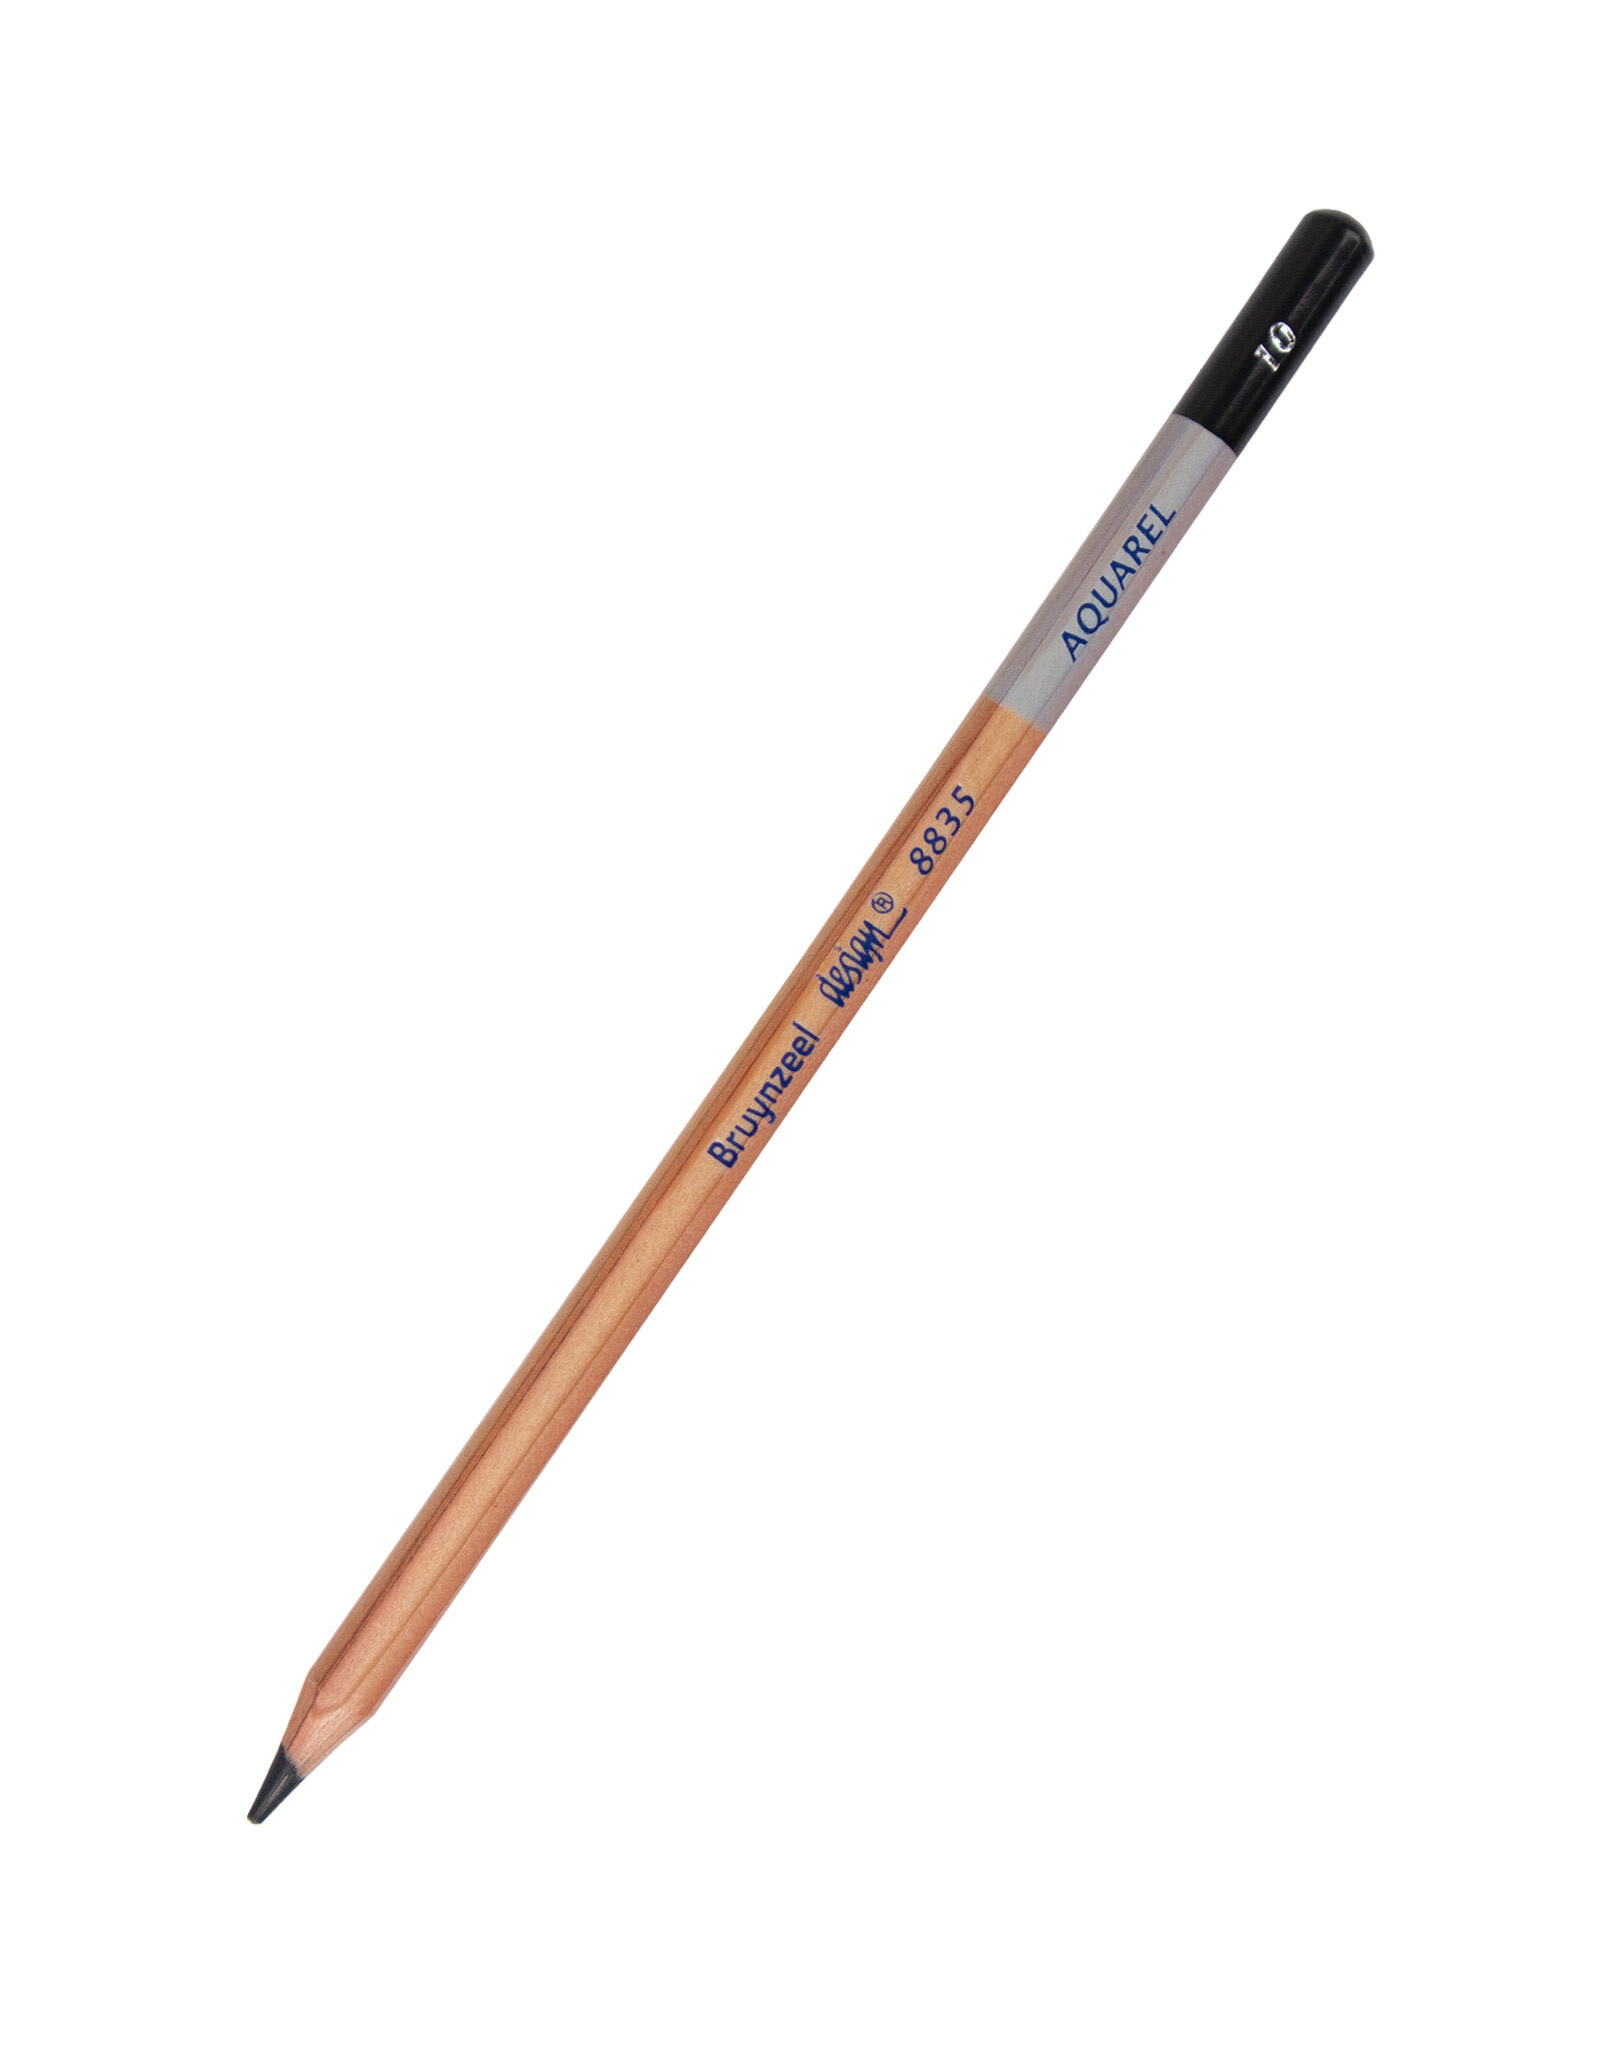 Royal Talens Bruynzeel Design Aquarel Pencil, Black